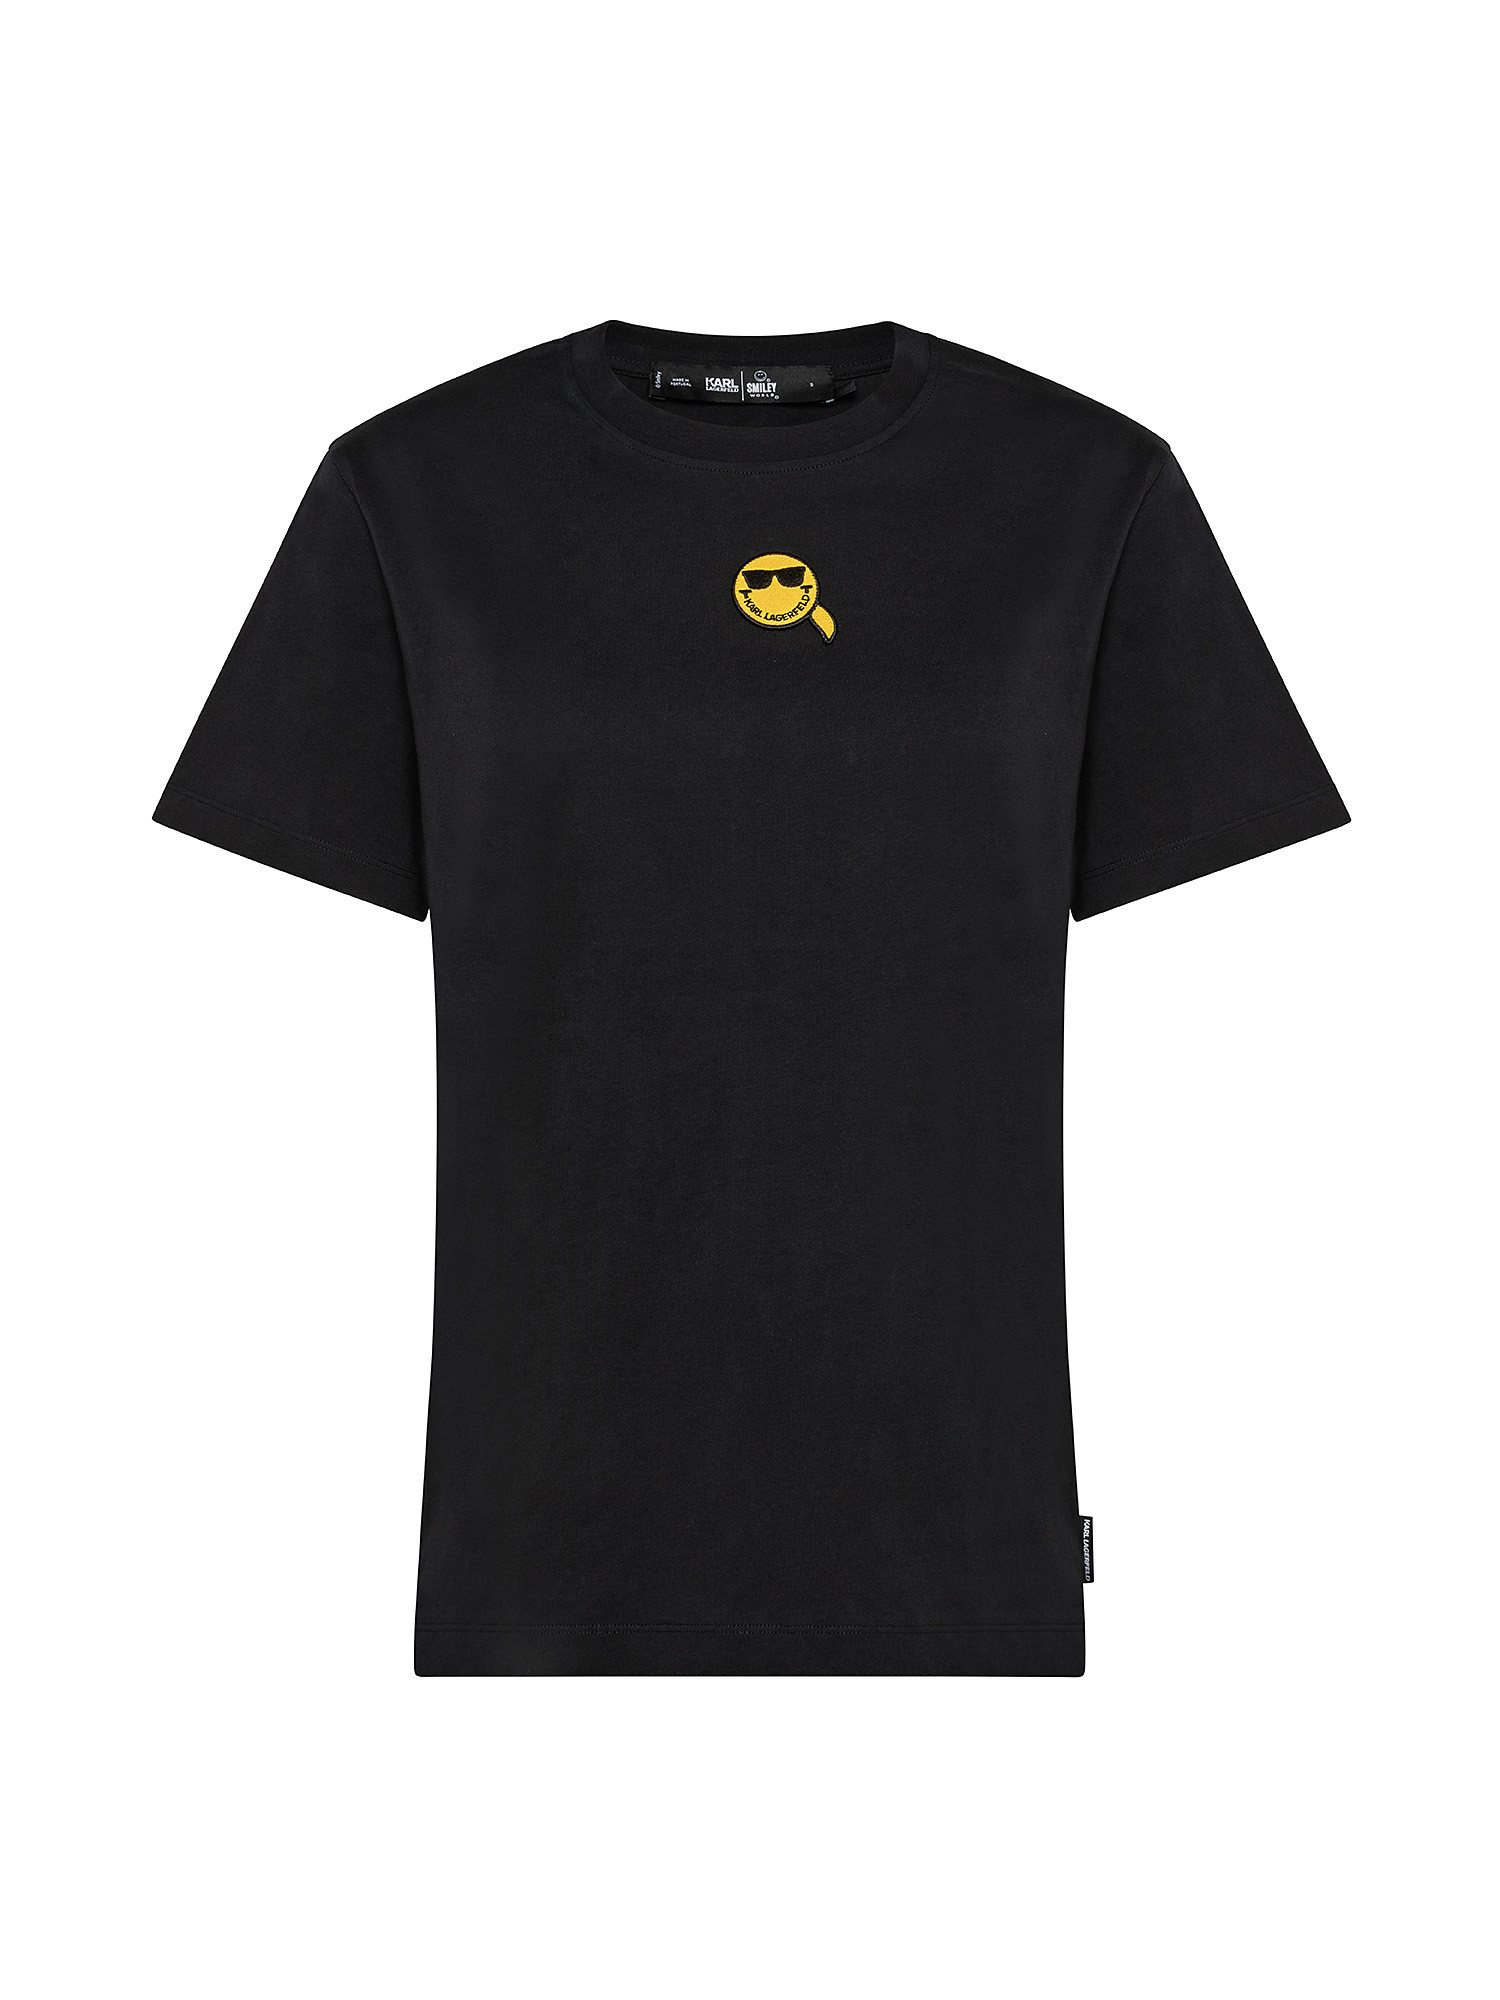 T-shirt unisex con logo mini emoticon, Nero, large image number 0